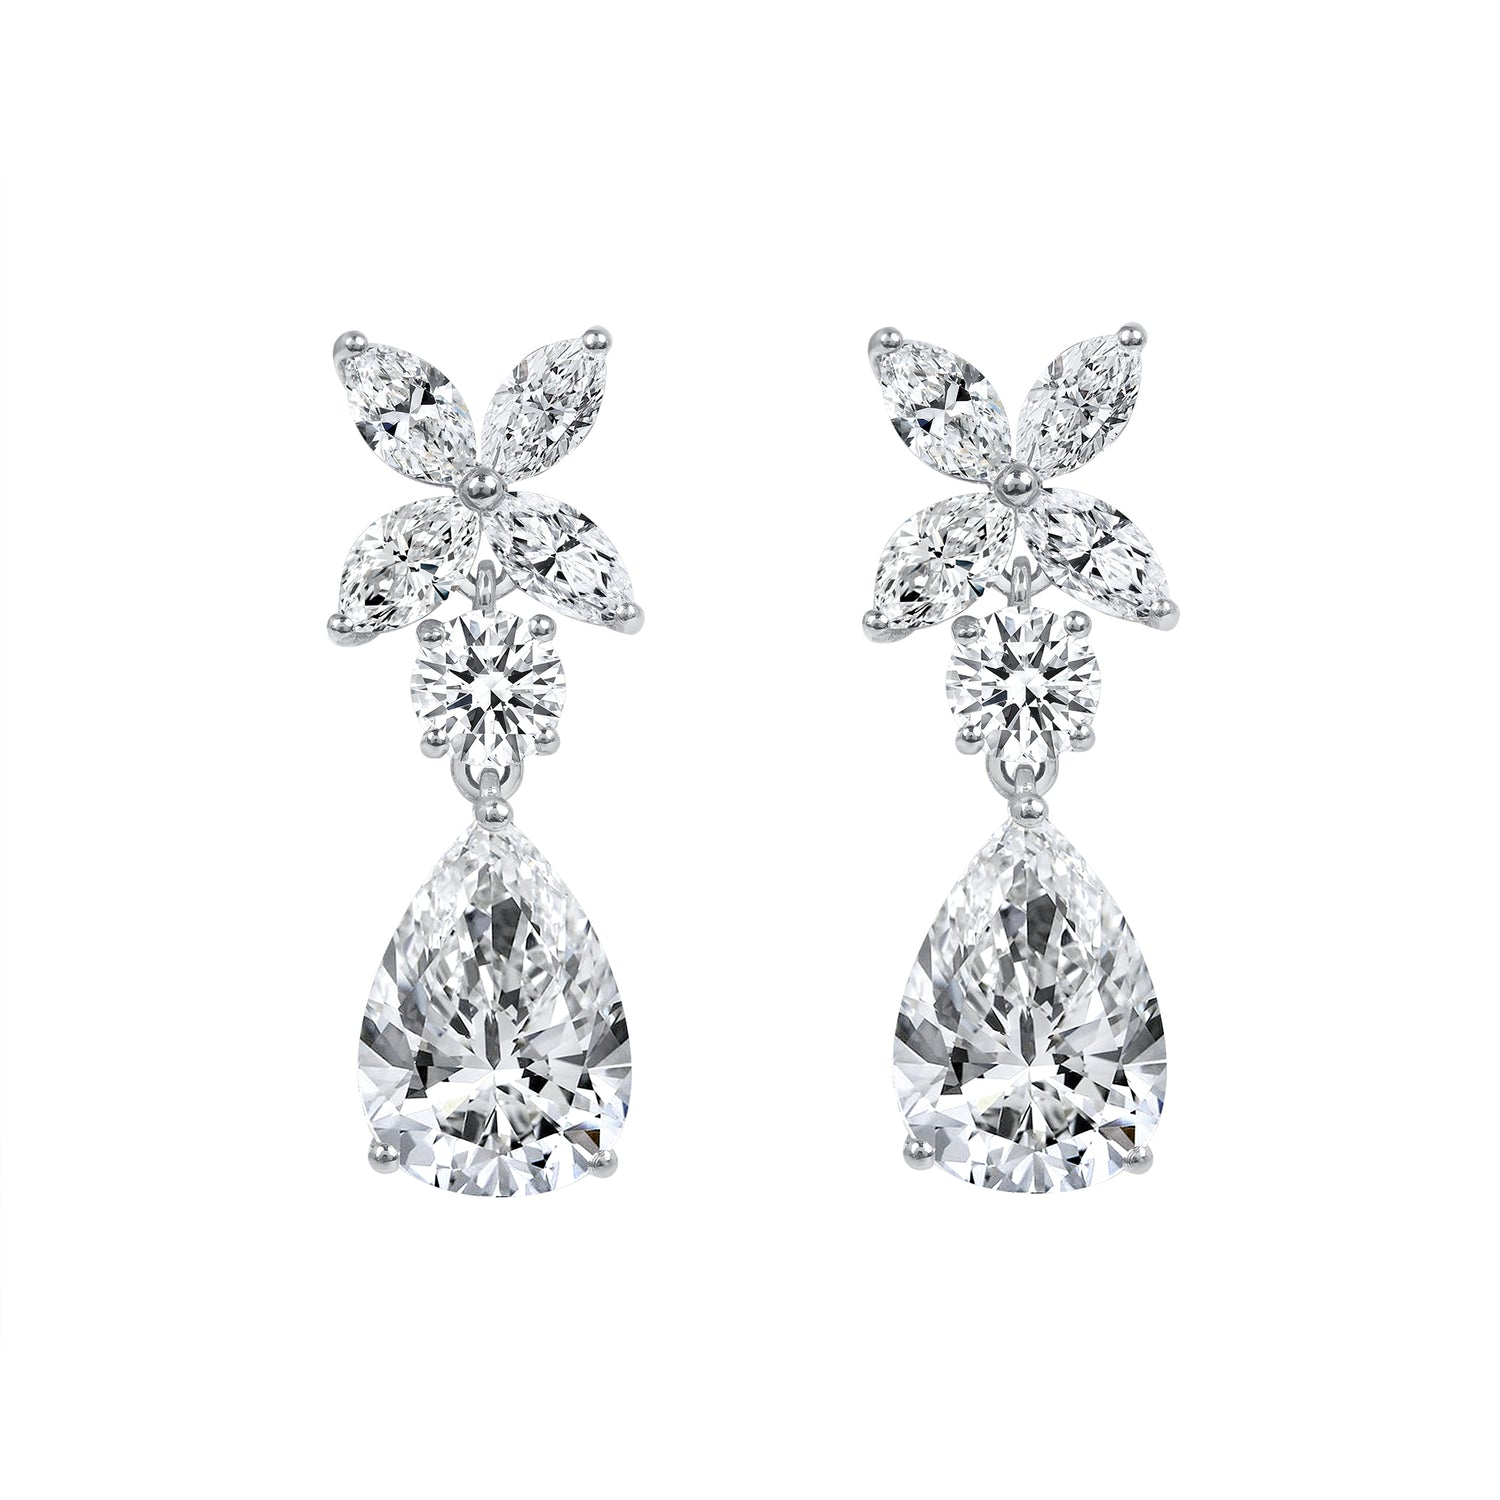 5.23 CT. Mixed Cut Diamond Drop Earrings in Platinum